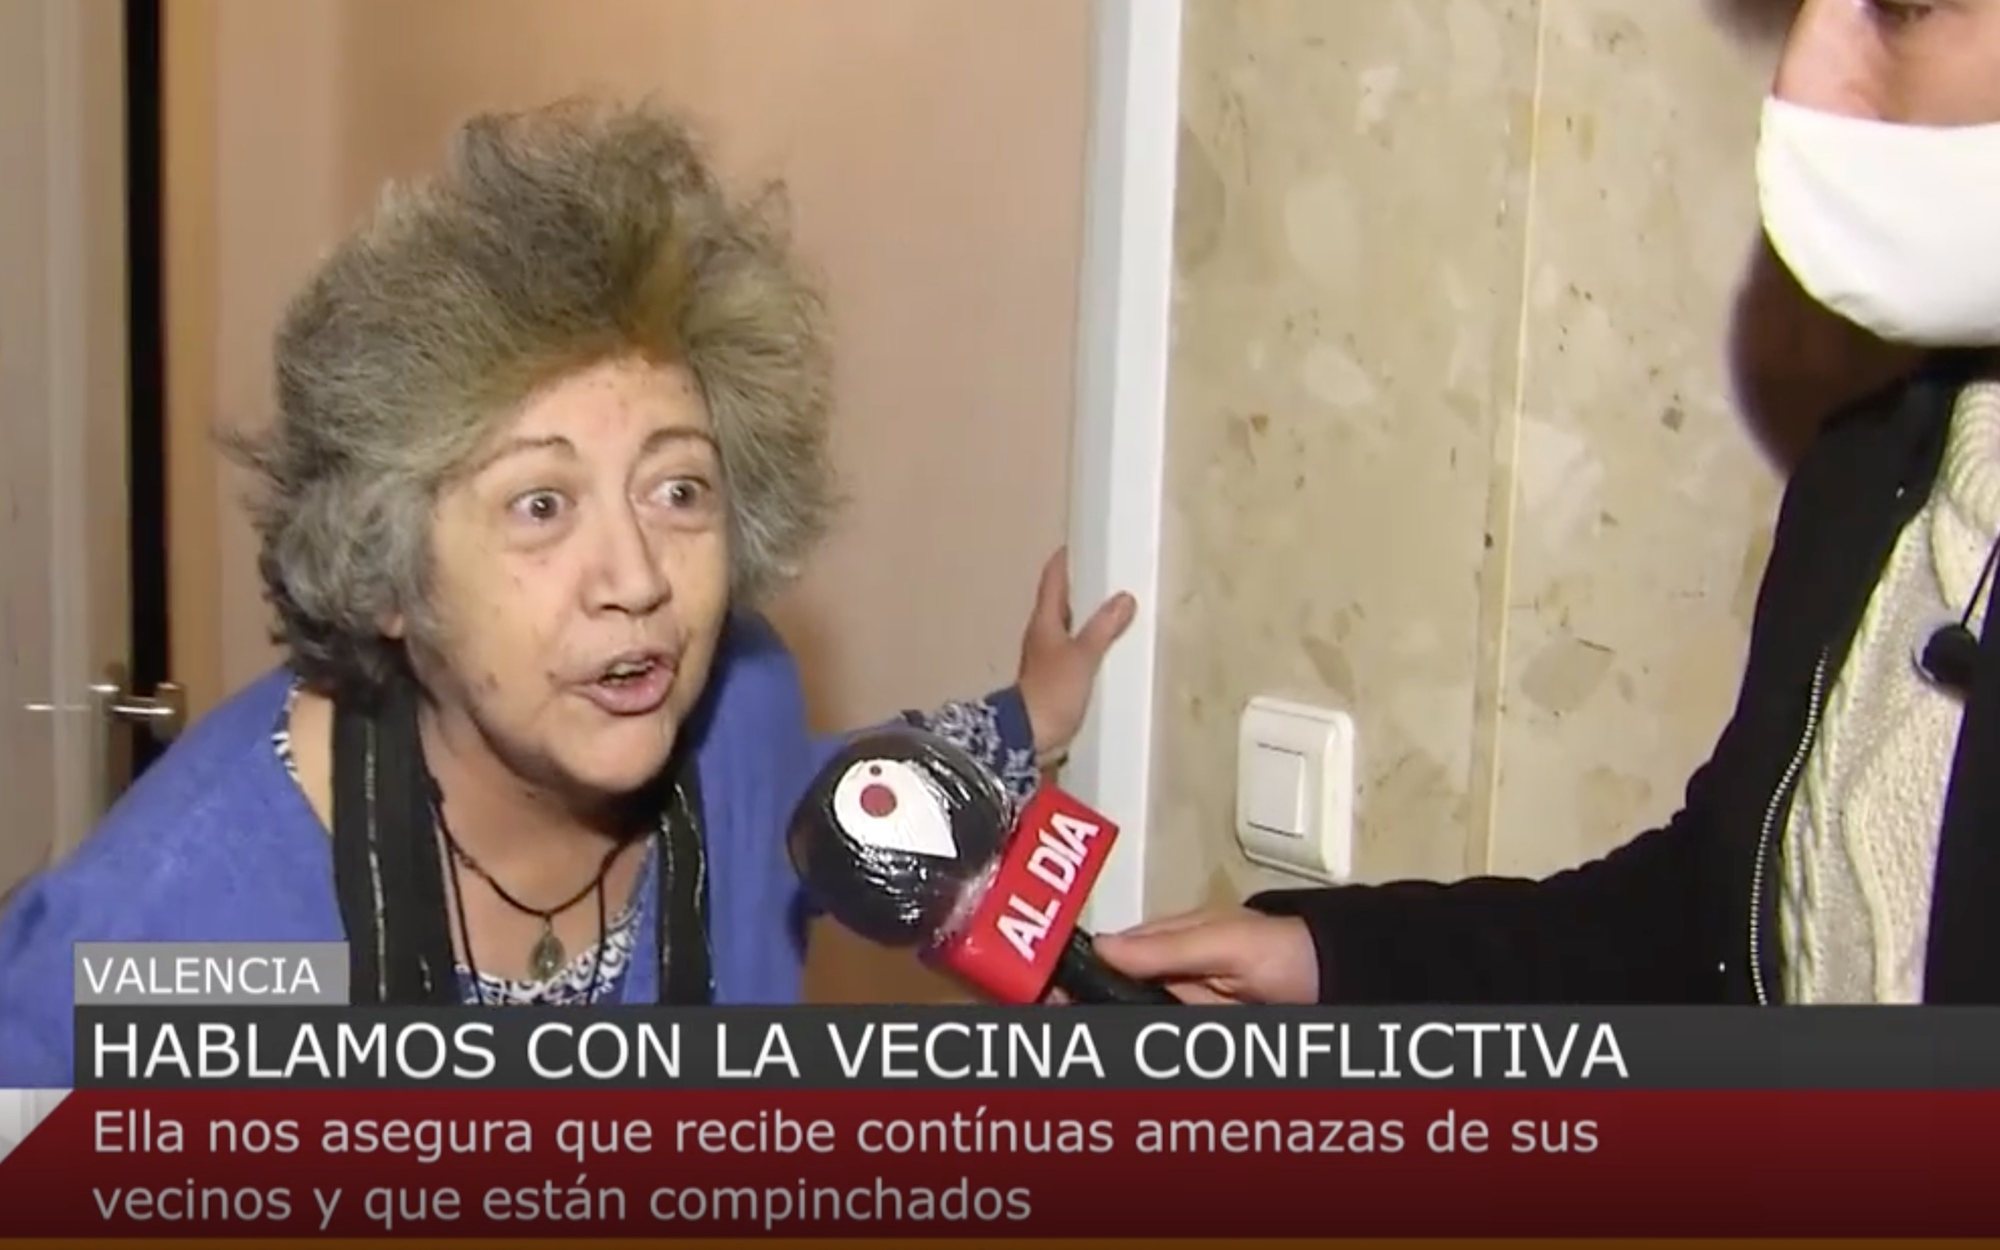 Vuelve el espíritu de las Vecinas de Valencia: El caso de Georgina, con insultos y heces en el ascensor